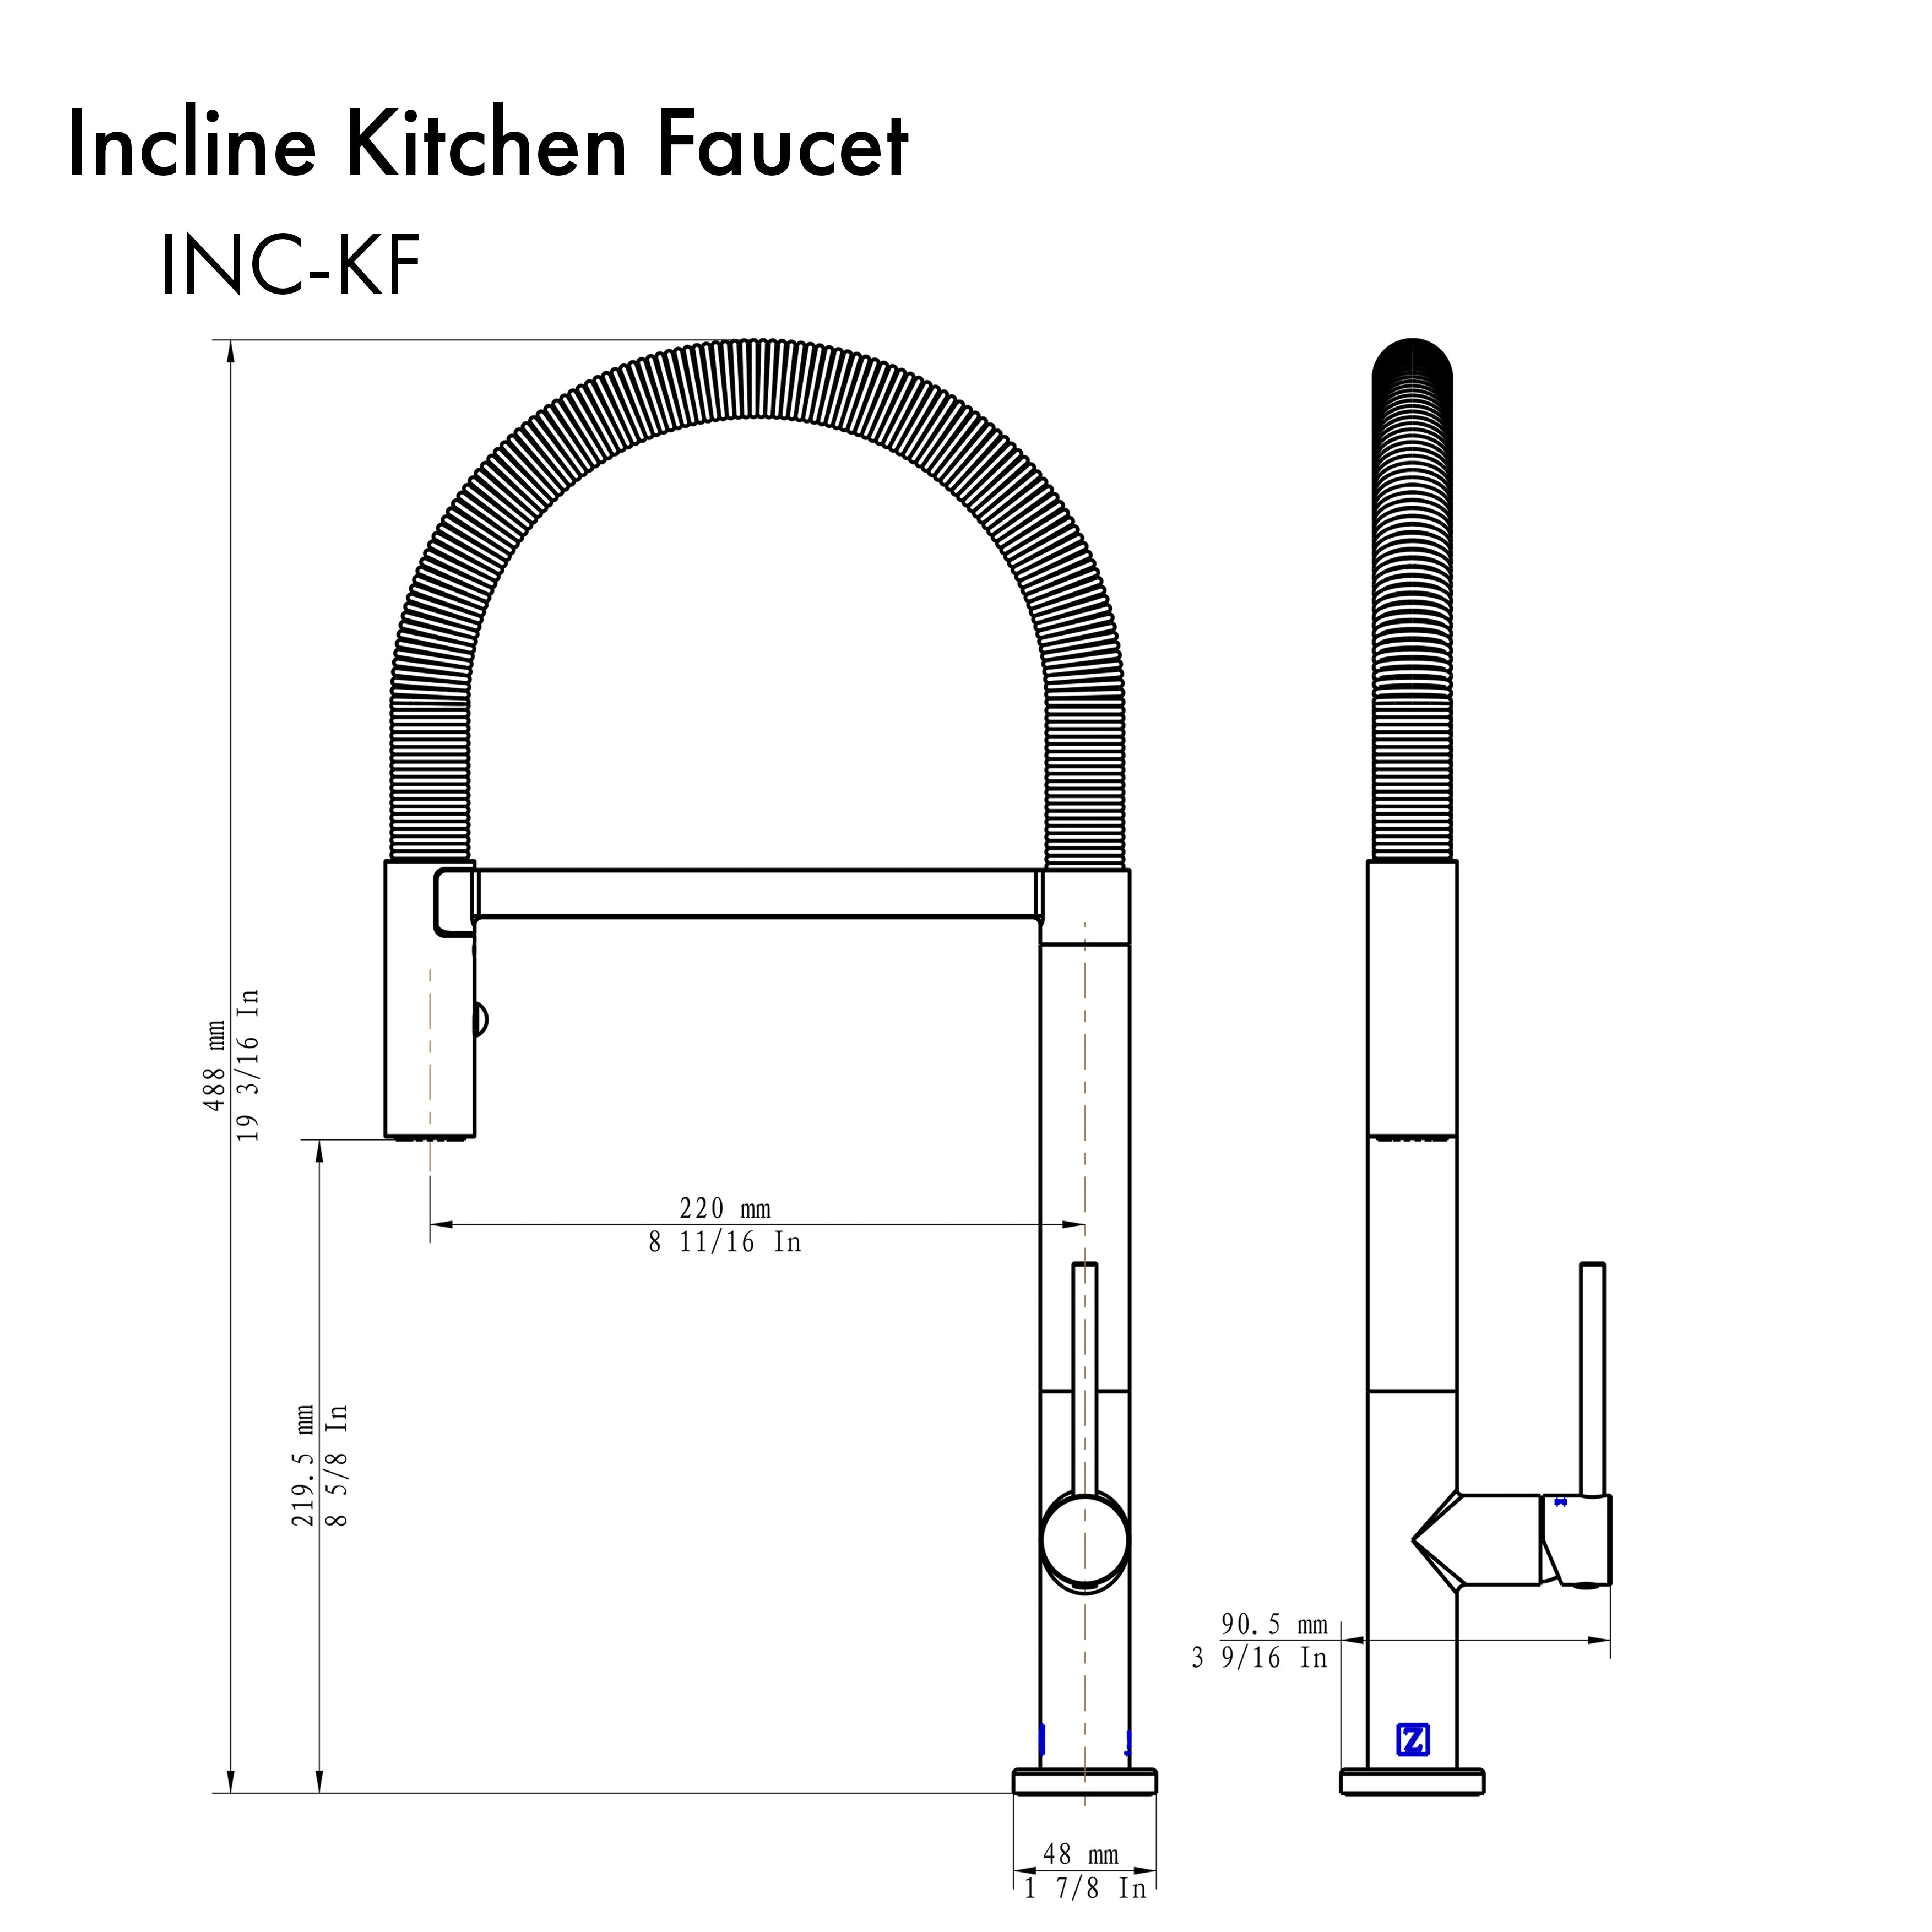 ZLINE Incline Kitchen Faucet - INC-KF